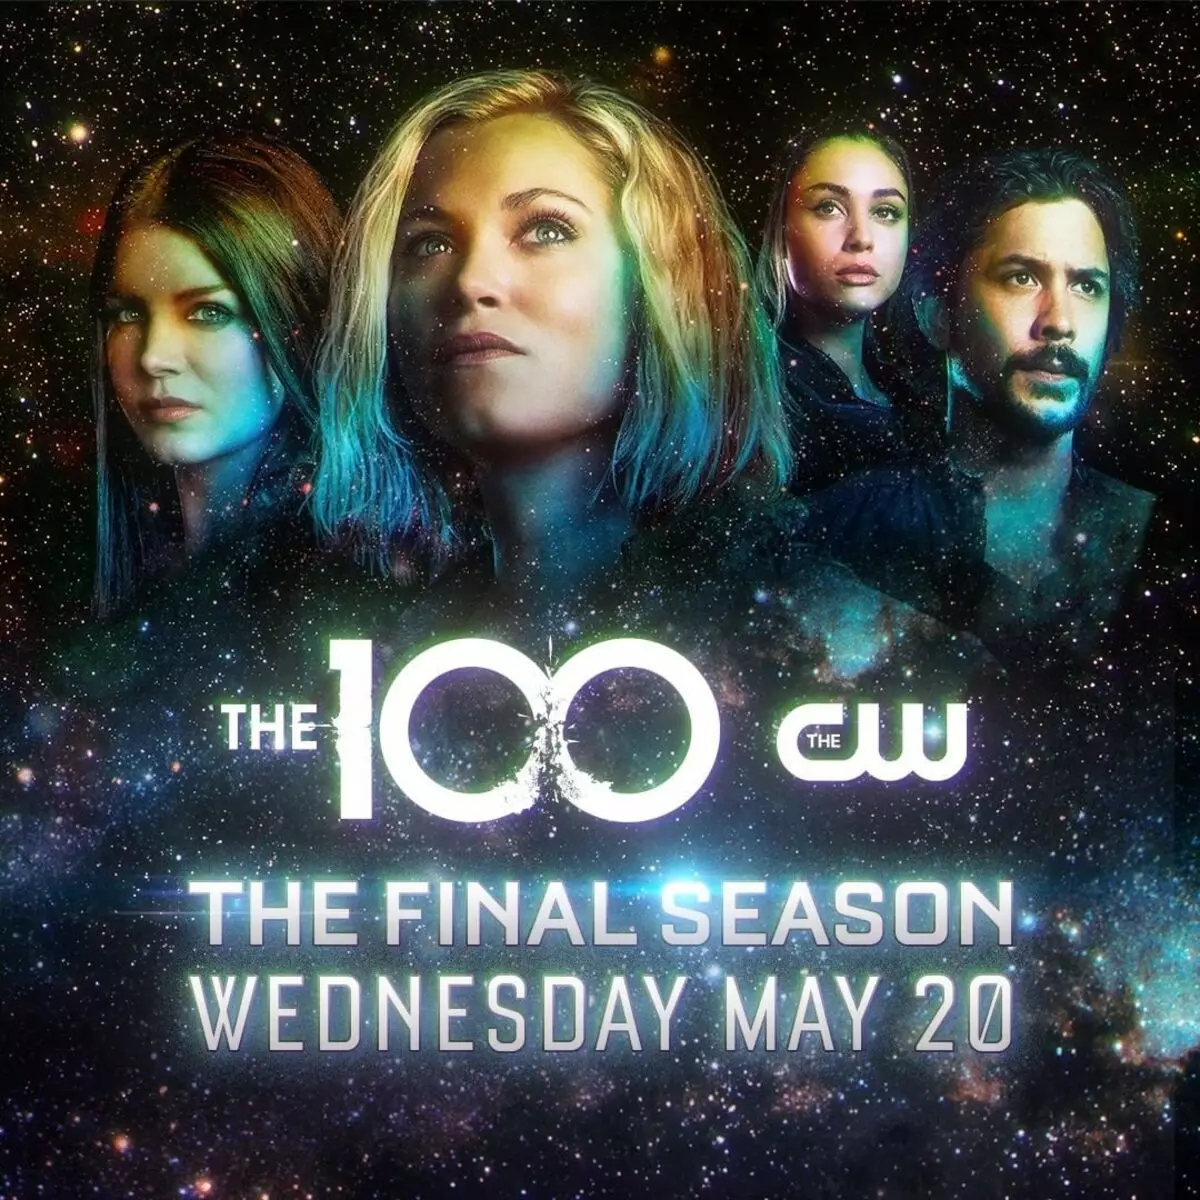 CW kanal najavio je datum premijere završne sezone 